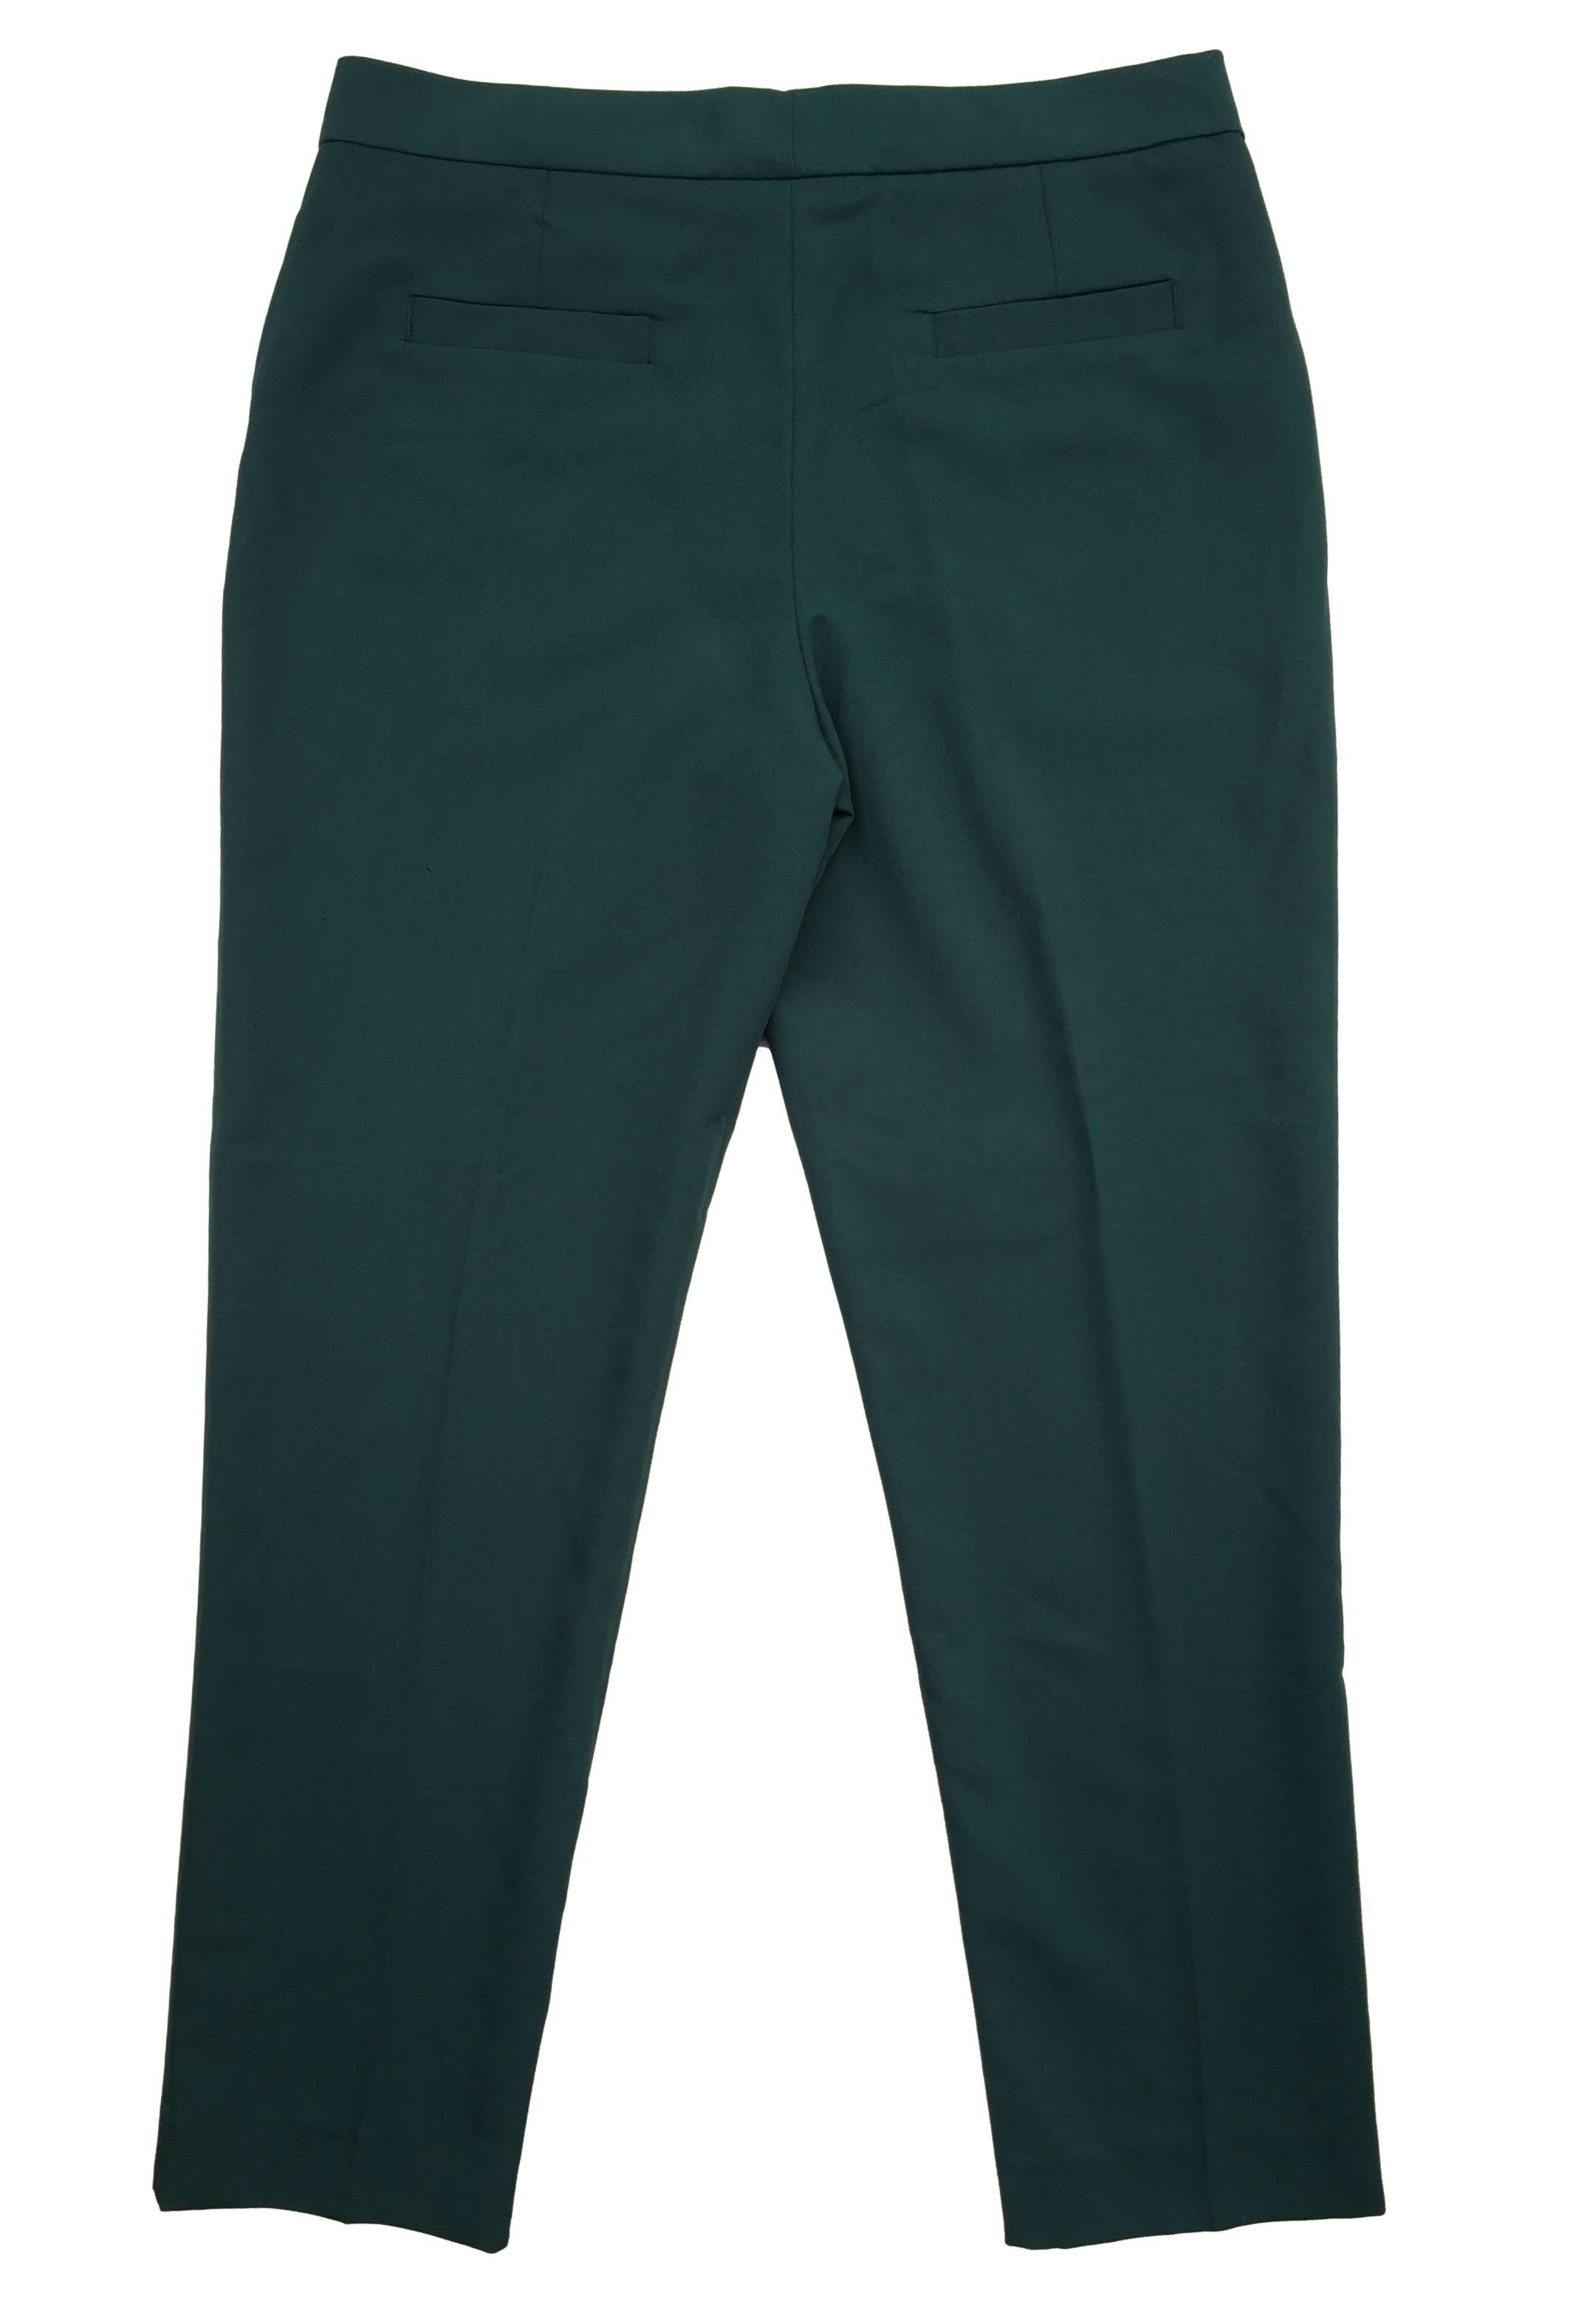 Pantalón Mango verde oscuro tipo sastre, botón y cierre delantero. Cintura: 80cm, Tiro: 28cm, Largo: 95cm